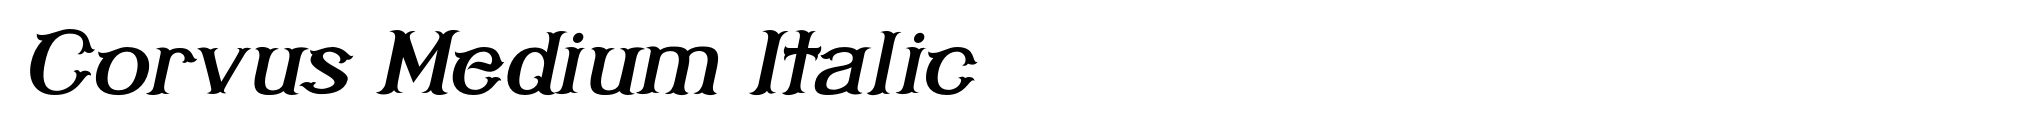 Corvus Medium Italic image